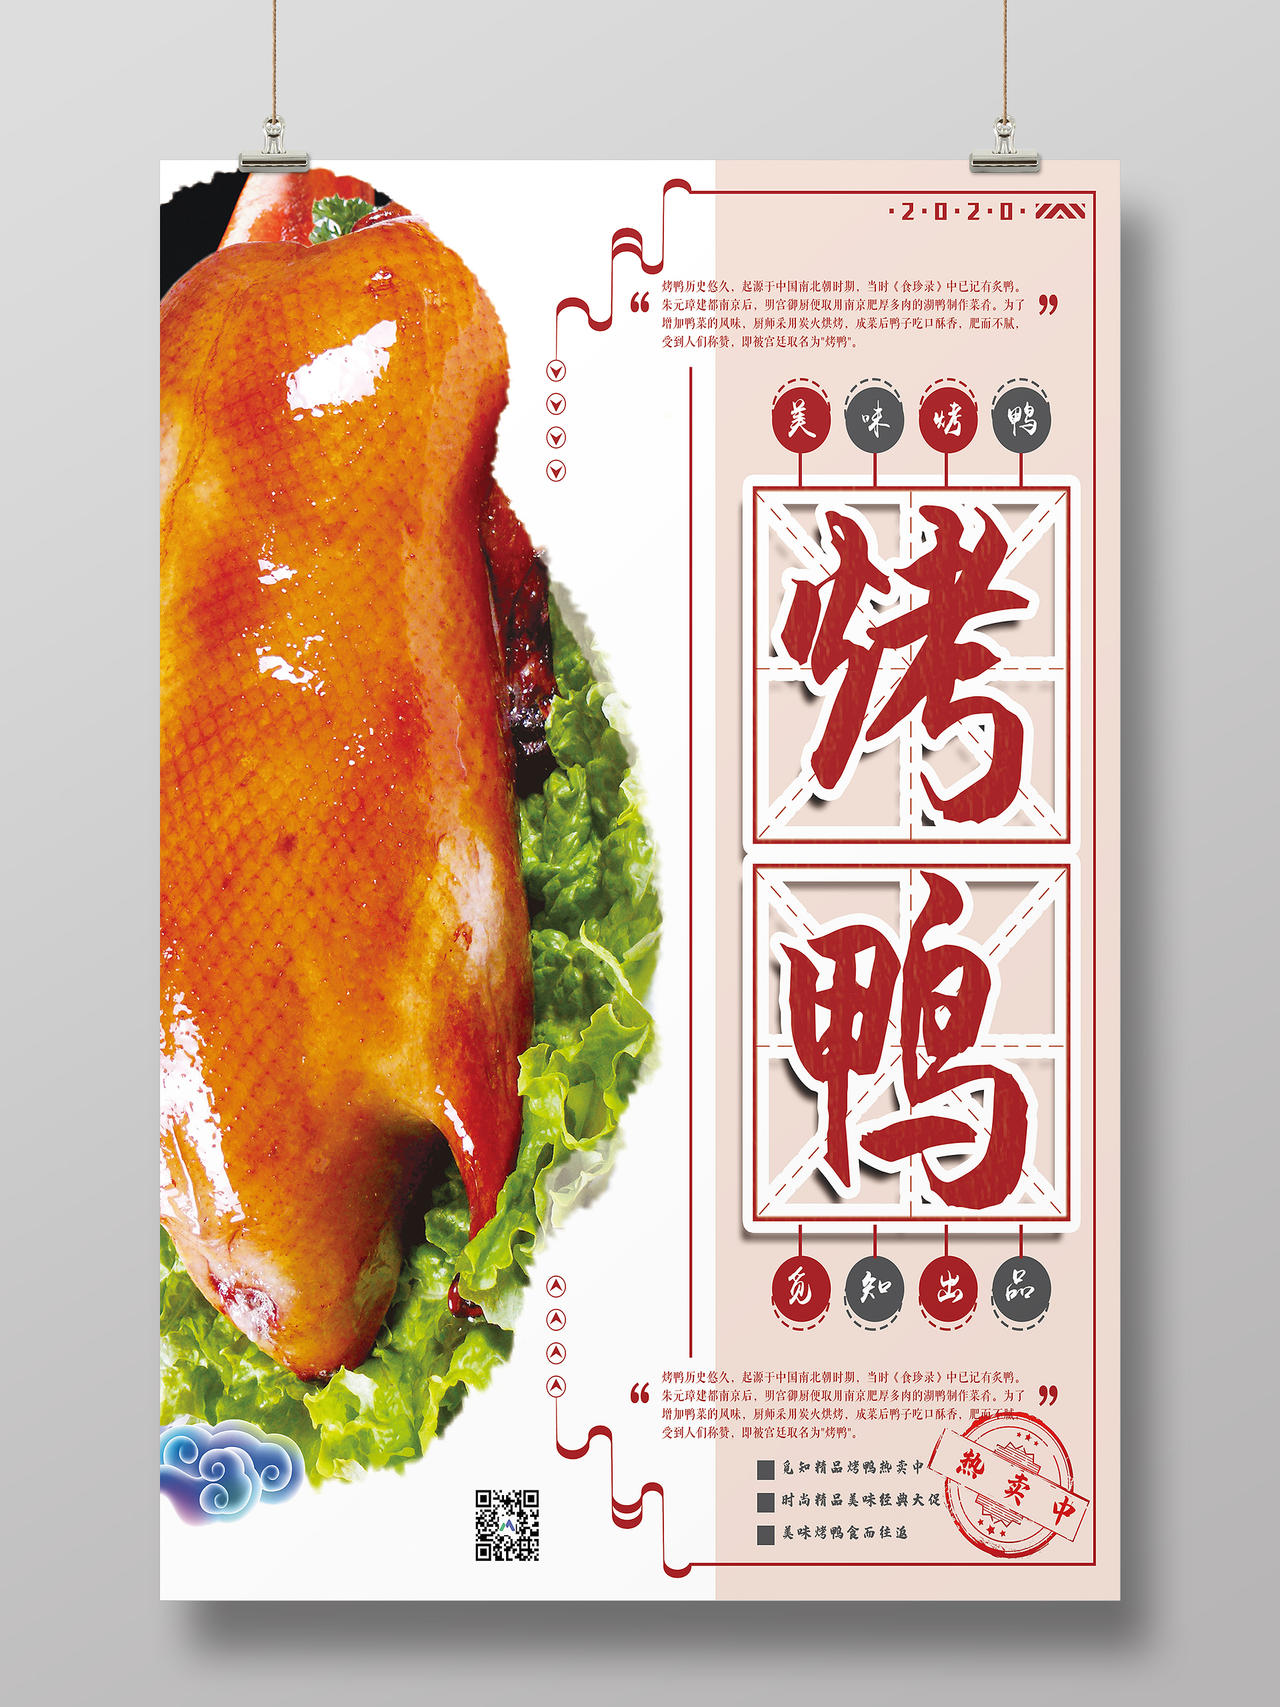 简约大气美味烤鸭美食宣传海报美食烤鸭